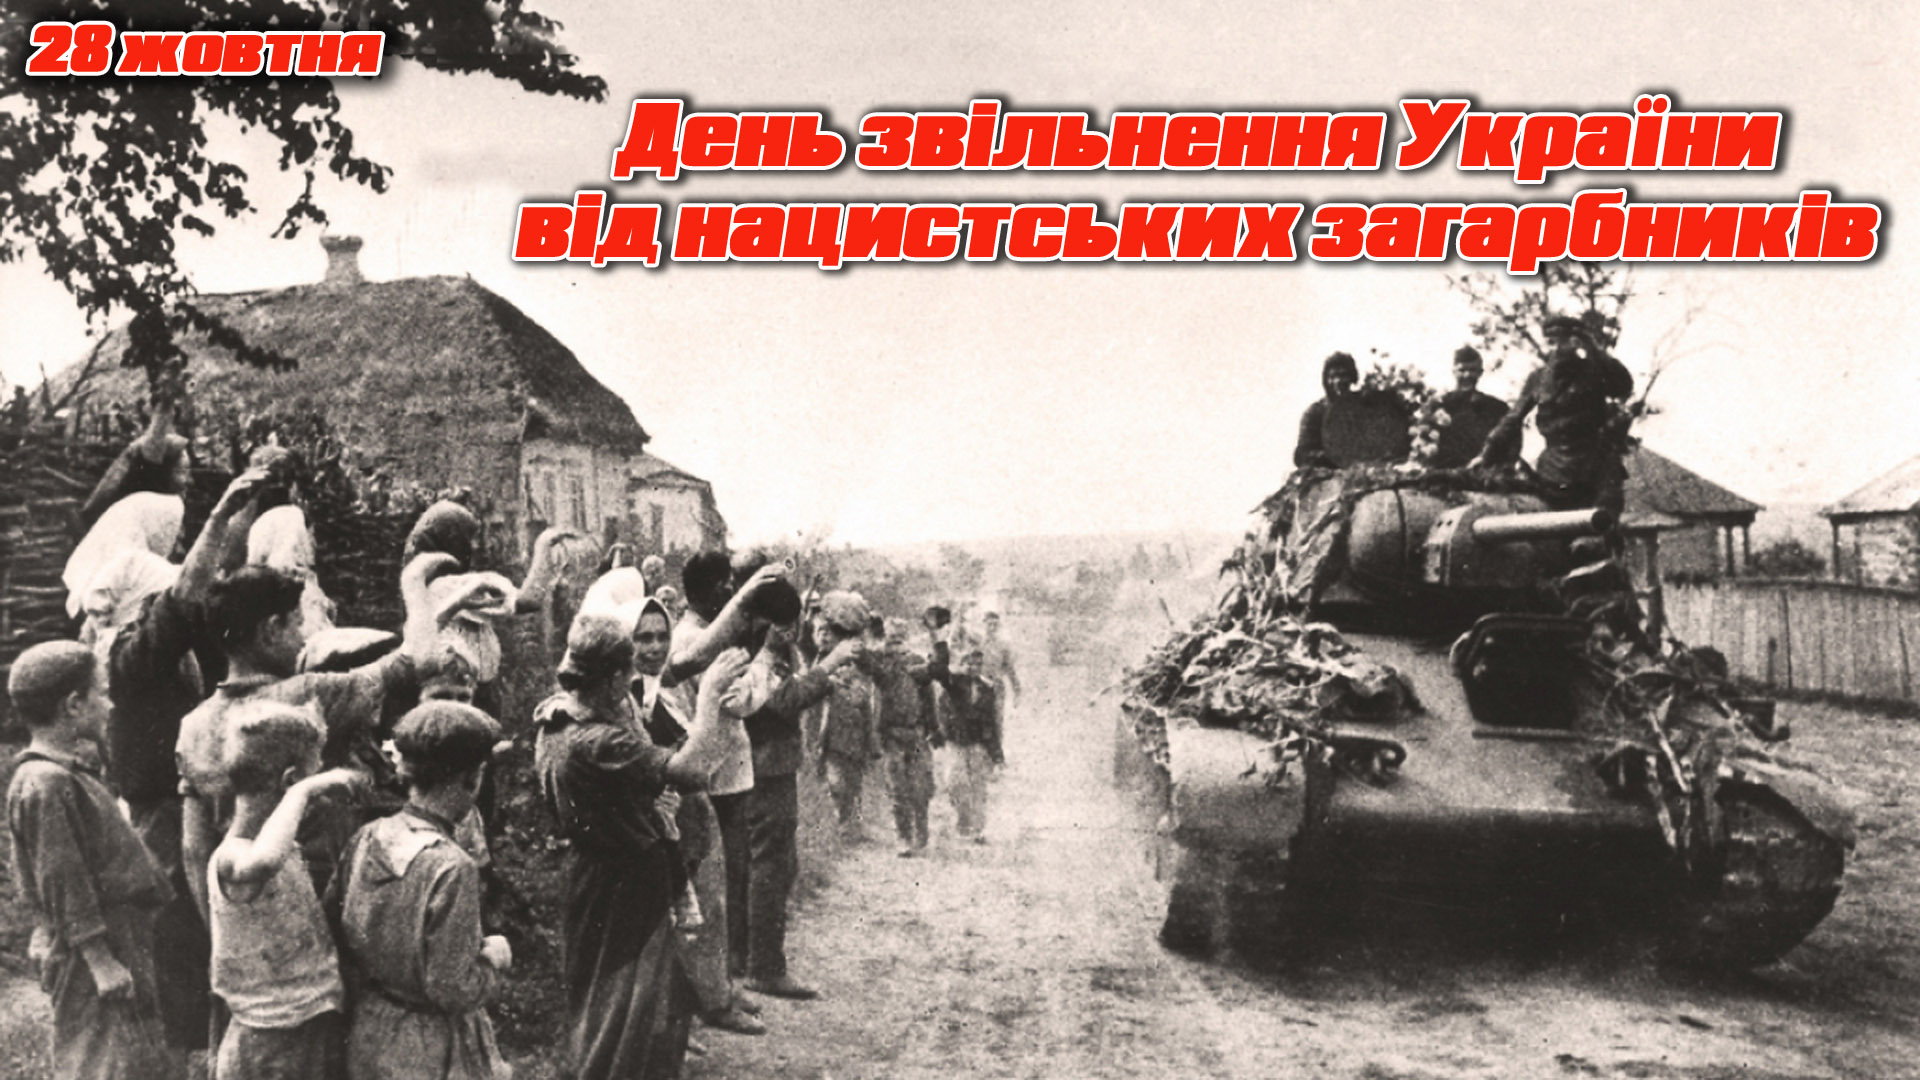 Фашистских захватчиков в 1944 году. Освобождение Украины от немецко-фашистских захватчиков. 28 Октября день освобождения Украины от фашистских захватчиков. Освобождение Украины Дата 1944. 28 Октября 1944 года -освобождение Украины.